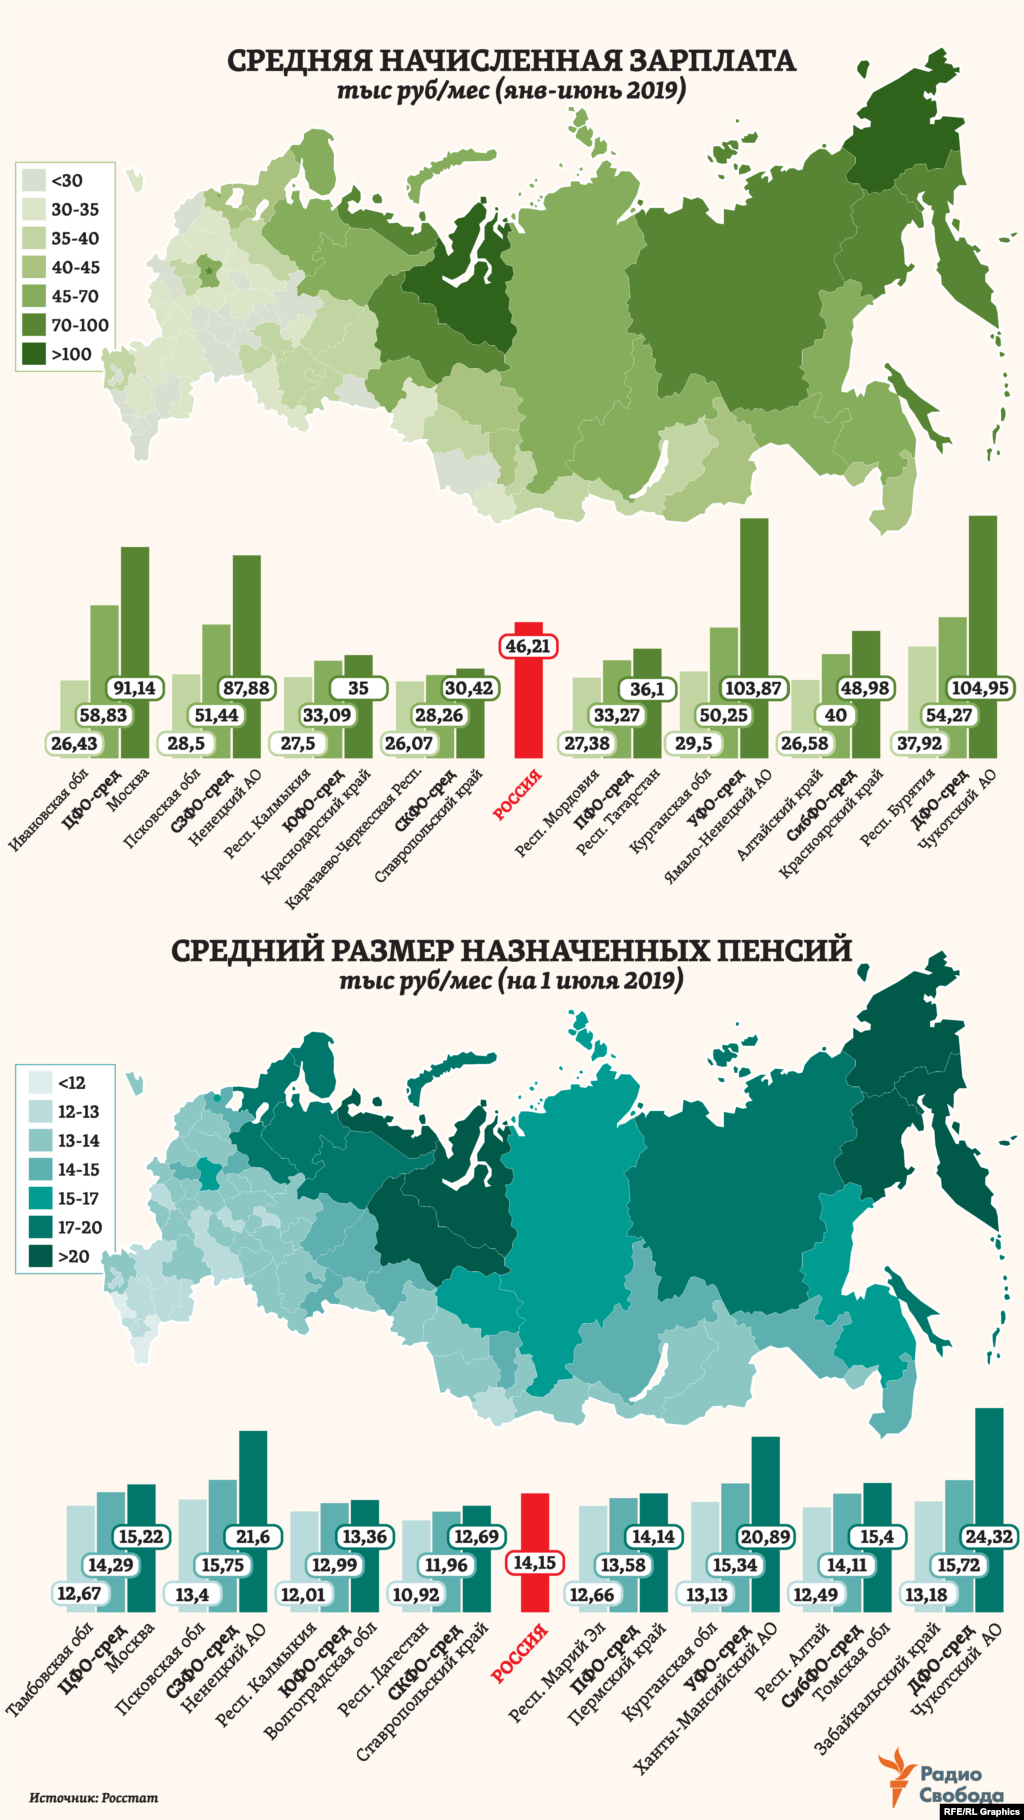 Средний размер назначенных пенсий в России на середину 2019 года, по данным, представленным Росстатом, &nbsp;составил 14 тысяч 150 рублей в месяц (или $218 &ndash; в пересчете по среднему за первое полугодие обменному курсу). Региональные различия в средних пенсиях в целом намного меньше, чем в средних же зарплатах. При этом распределение более высоких или более низких как зарплат, так и пенсий между отдельными регионами в большинстве случаев предсказуемо совпадает. &nbsp;